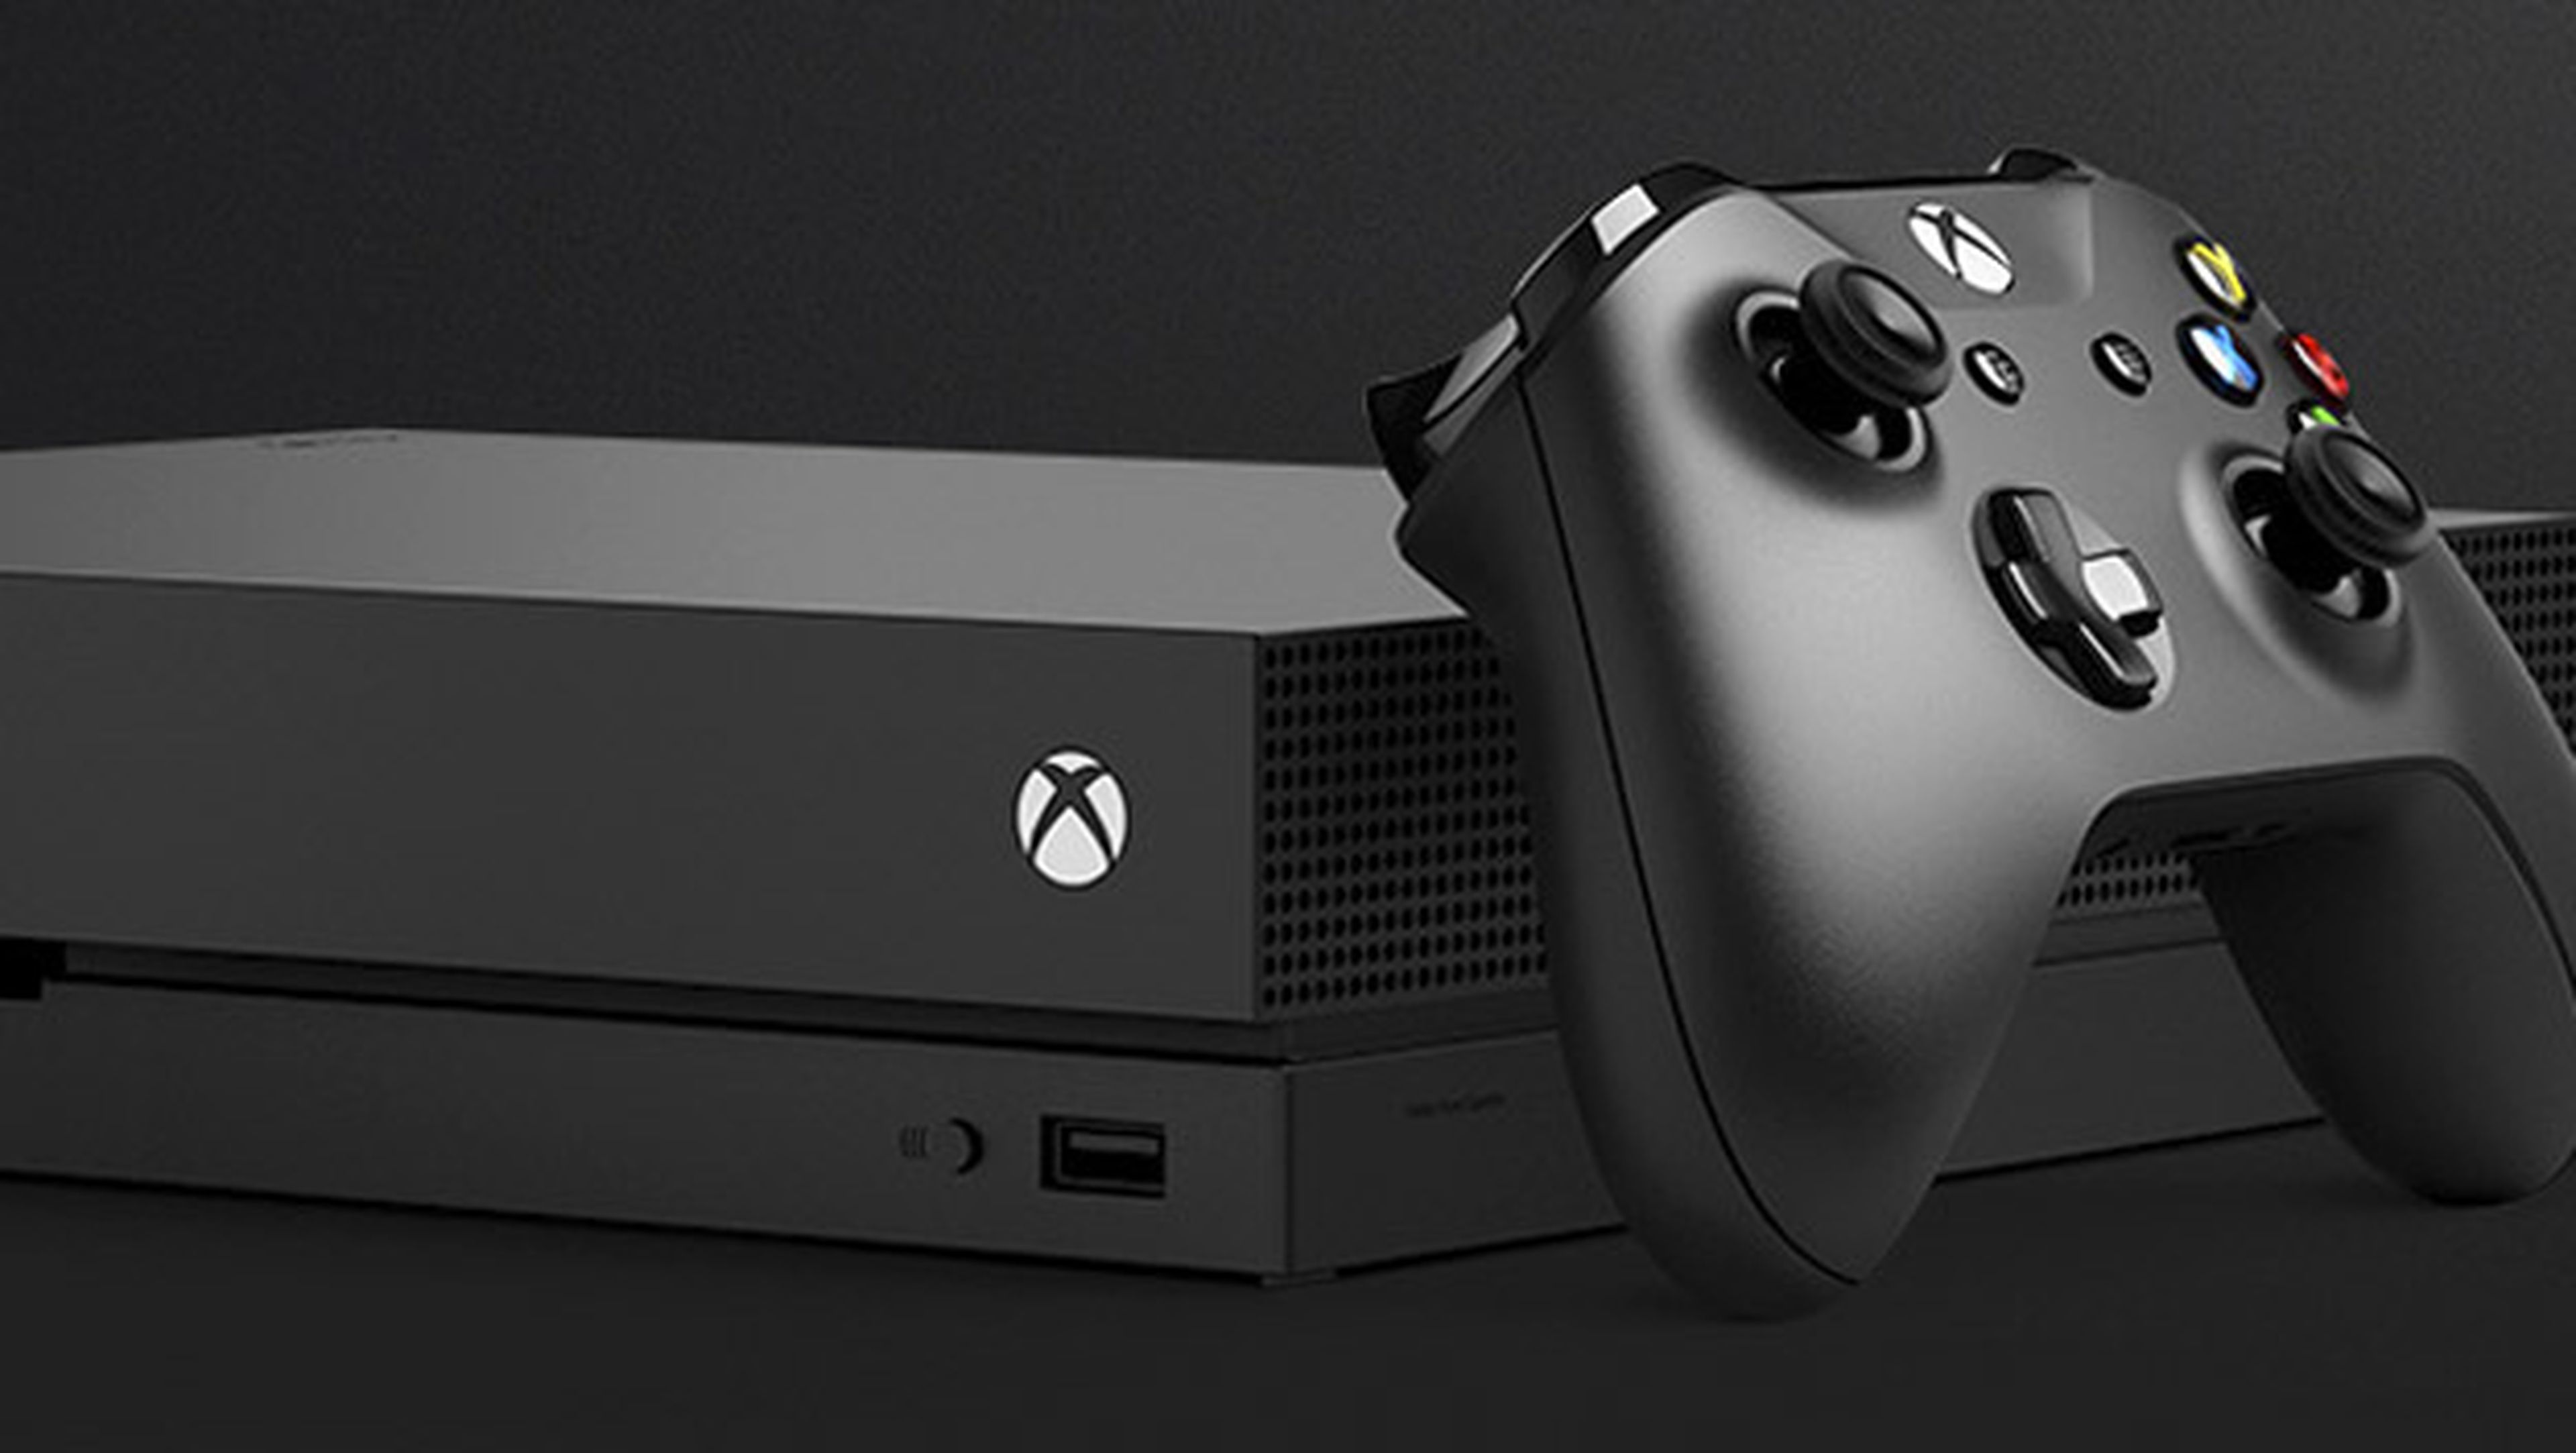 cooperar En cualquier momento inferencia Análisis de Xbox One X, la consola más potente con 4K y HDR | Computer Hoy